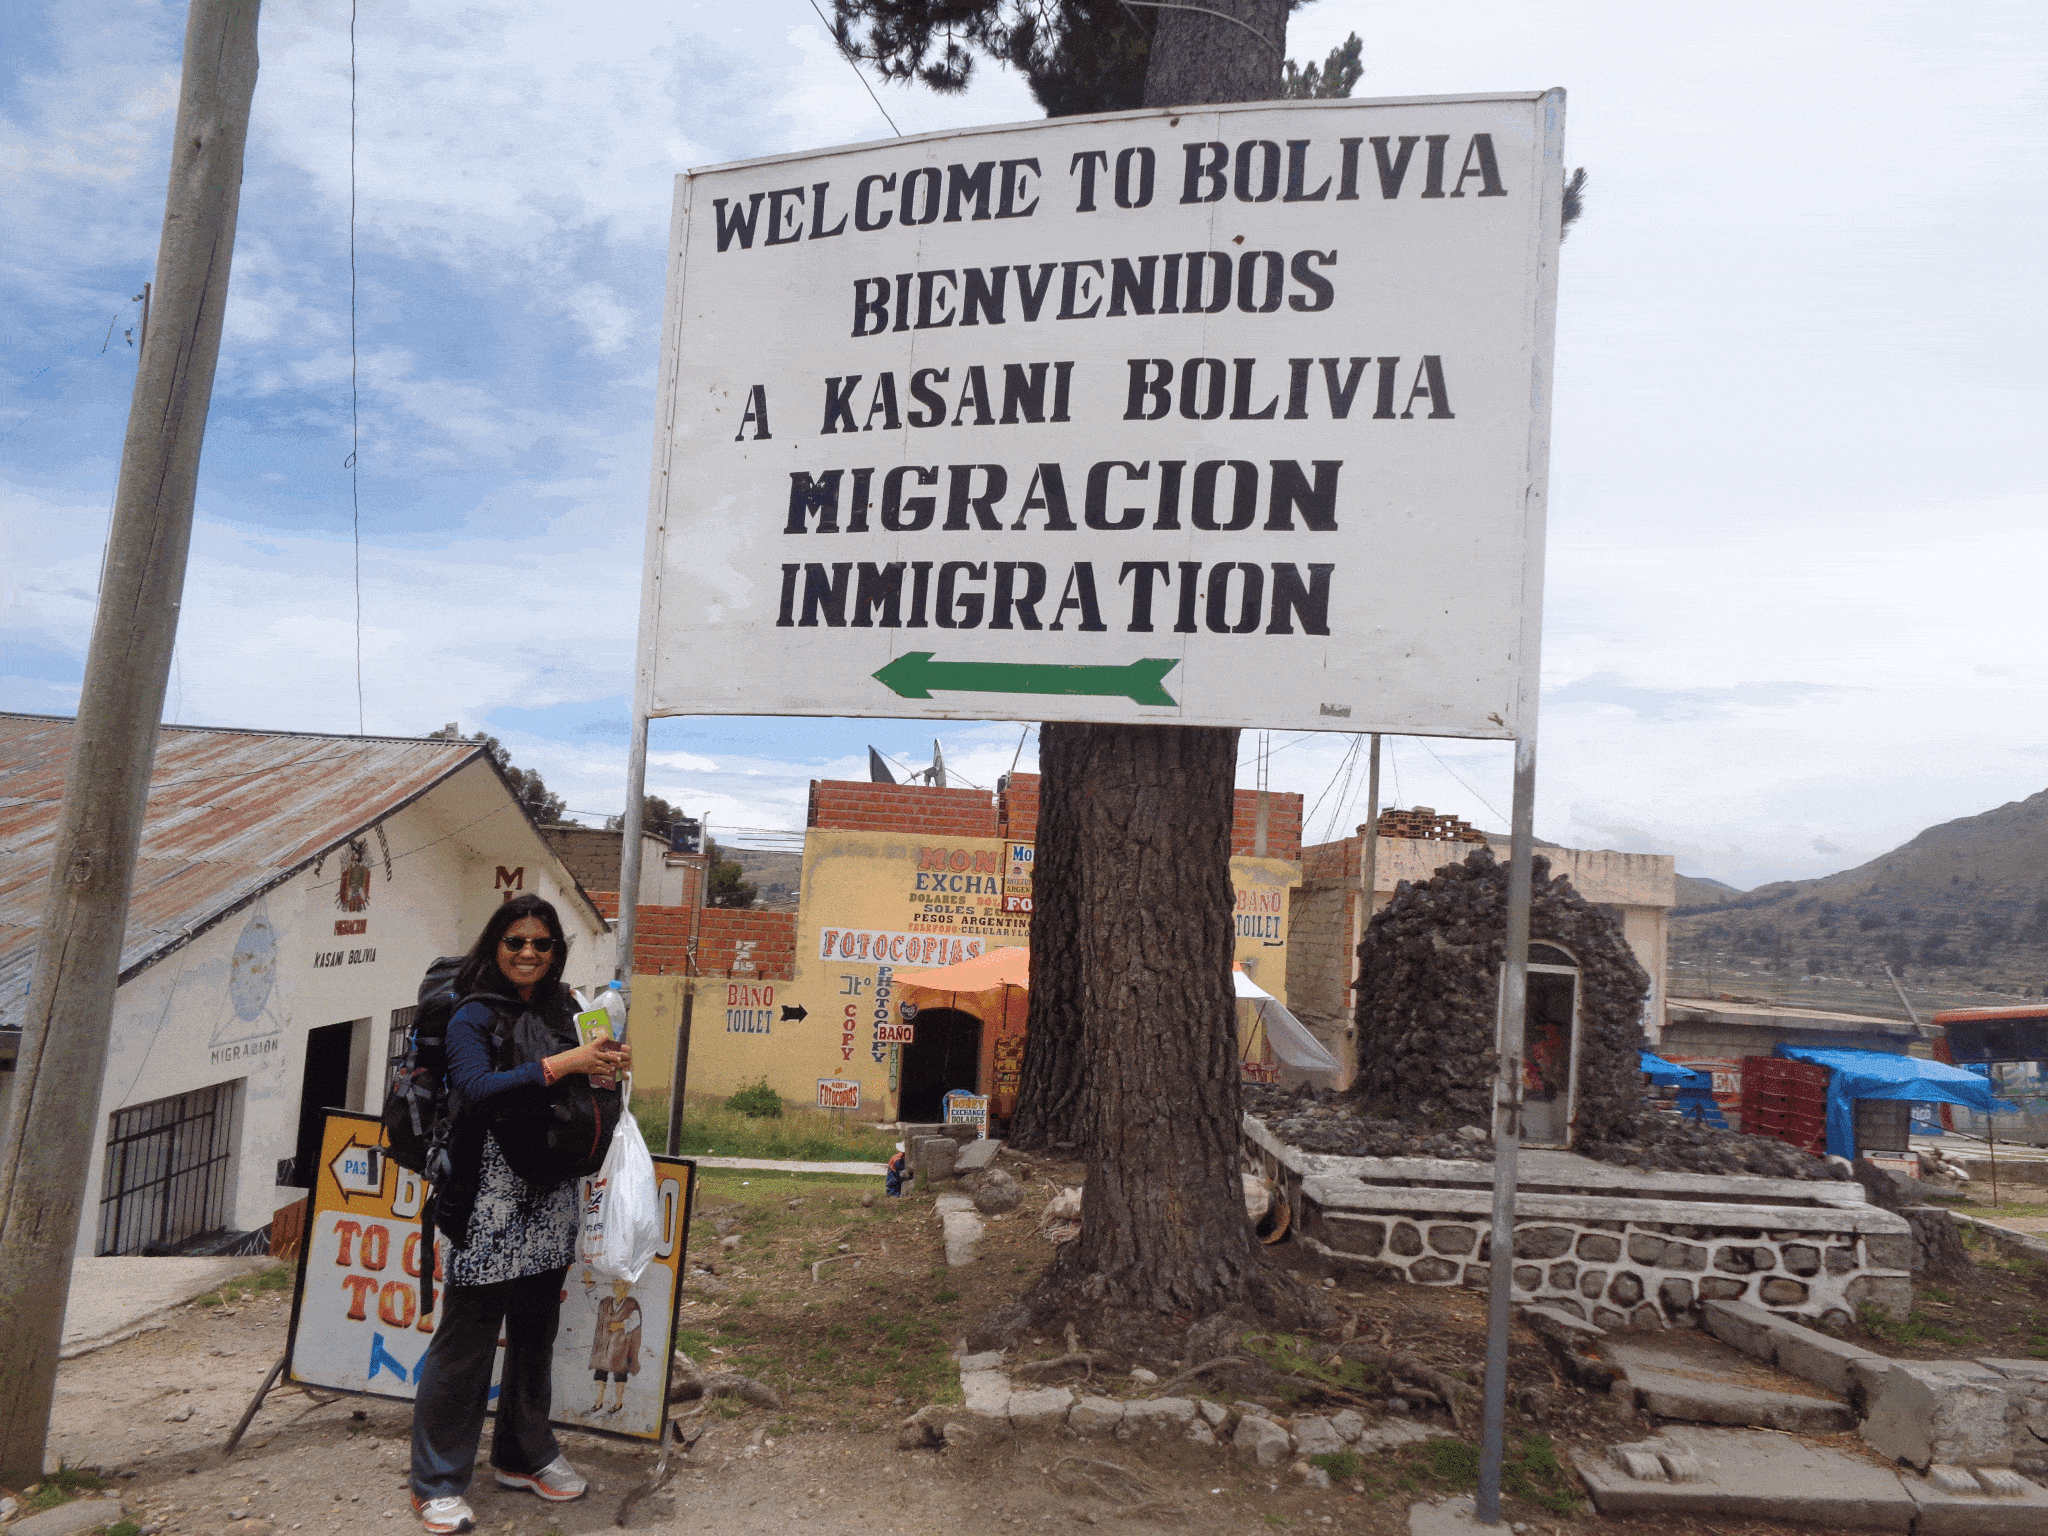 Peru - Bolivia Border